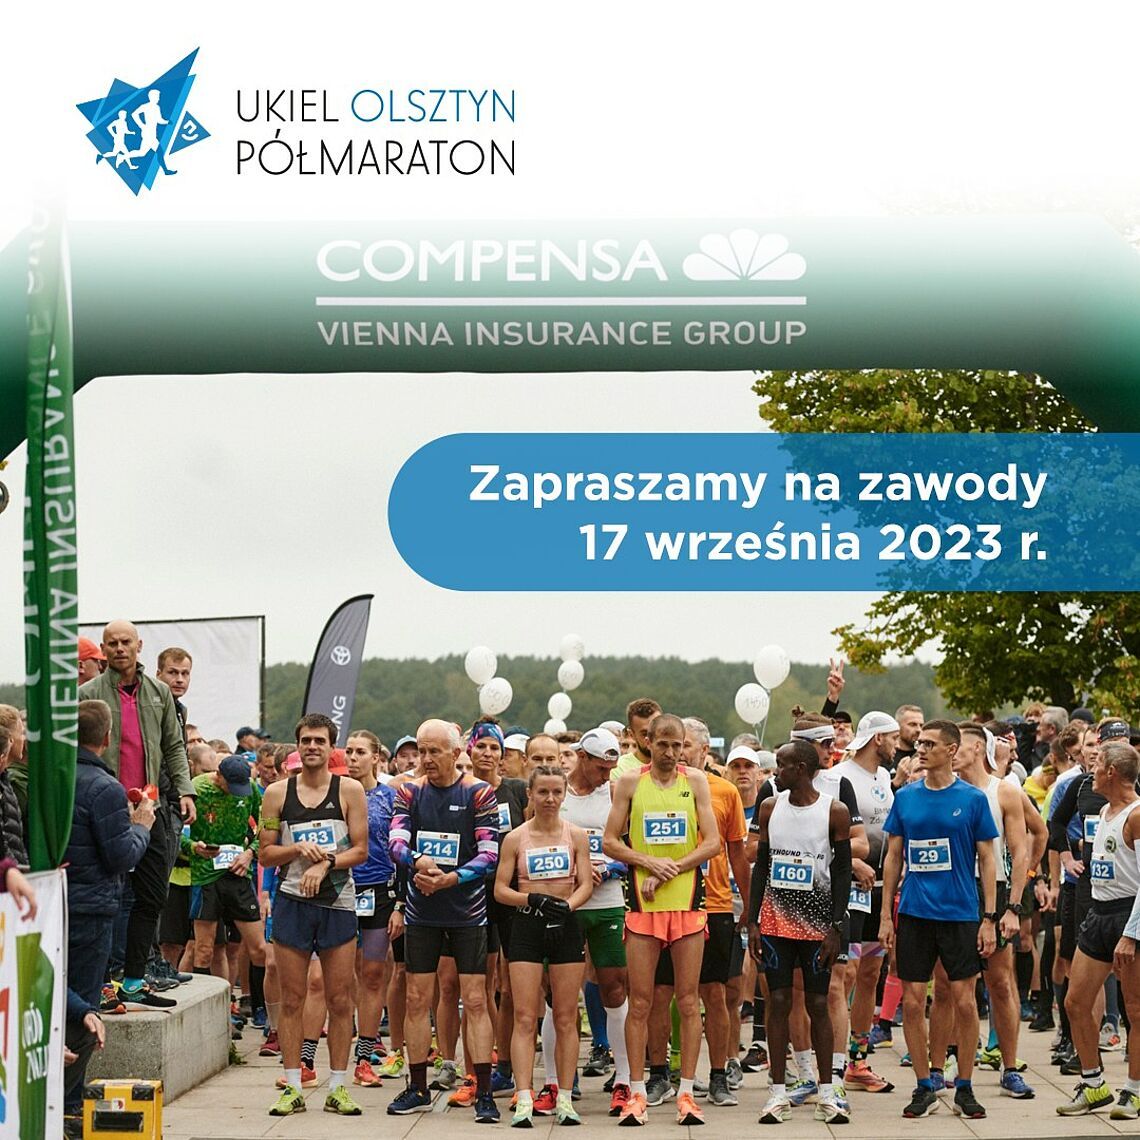 Trwają zapisy do olsztyńskiego półmaratonu